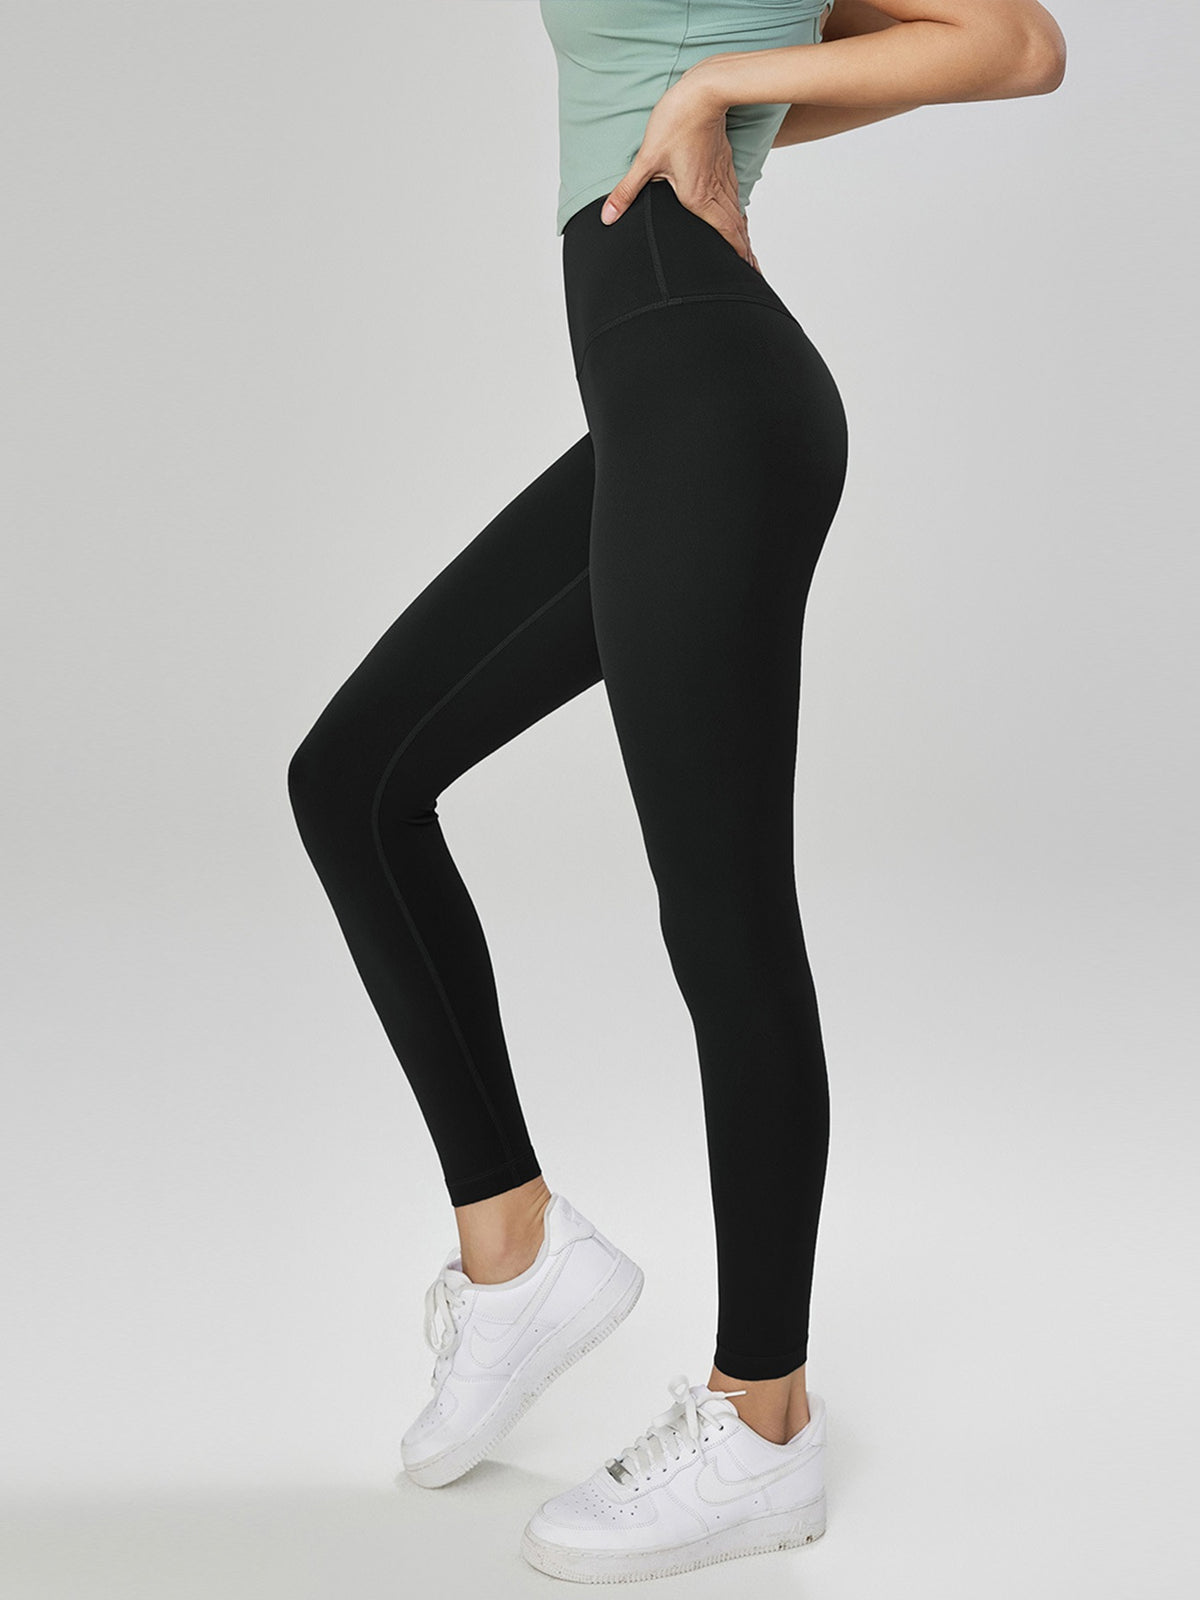 Women's new high waist yoga pants women's high waist hip lift fitness pants seamless peach hip sports tight leggings